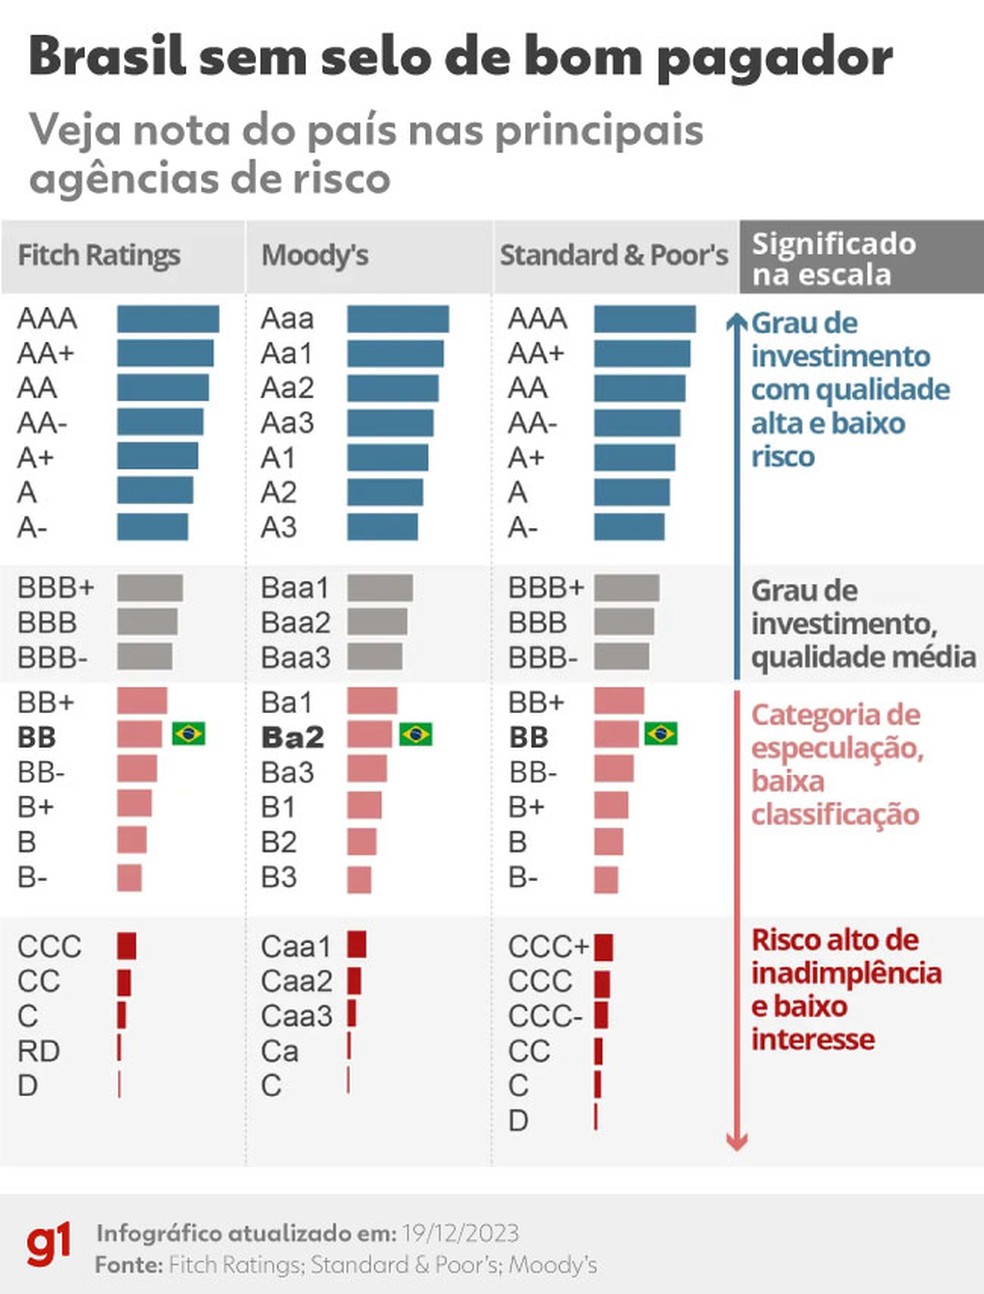 Veja as notas de crédito do Brasil (ratings) em todas as agências de risco — Foto: Arte g1